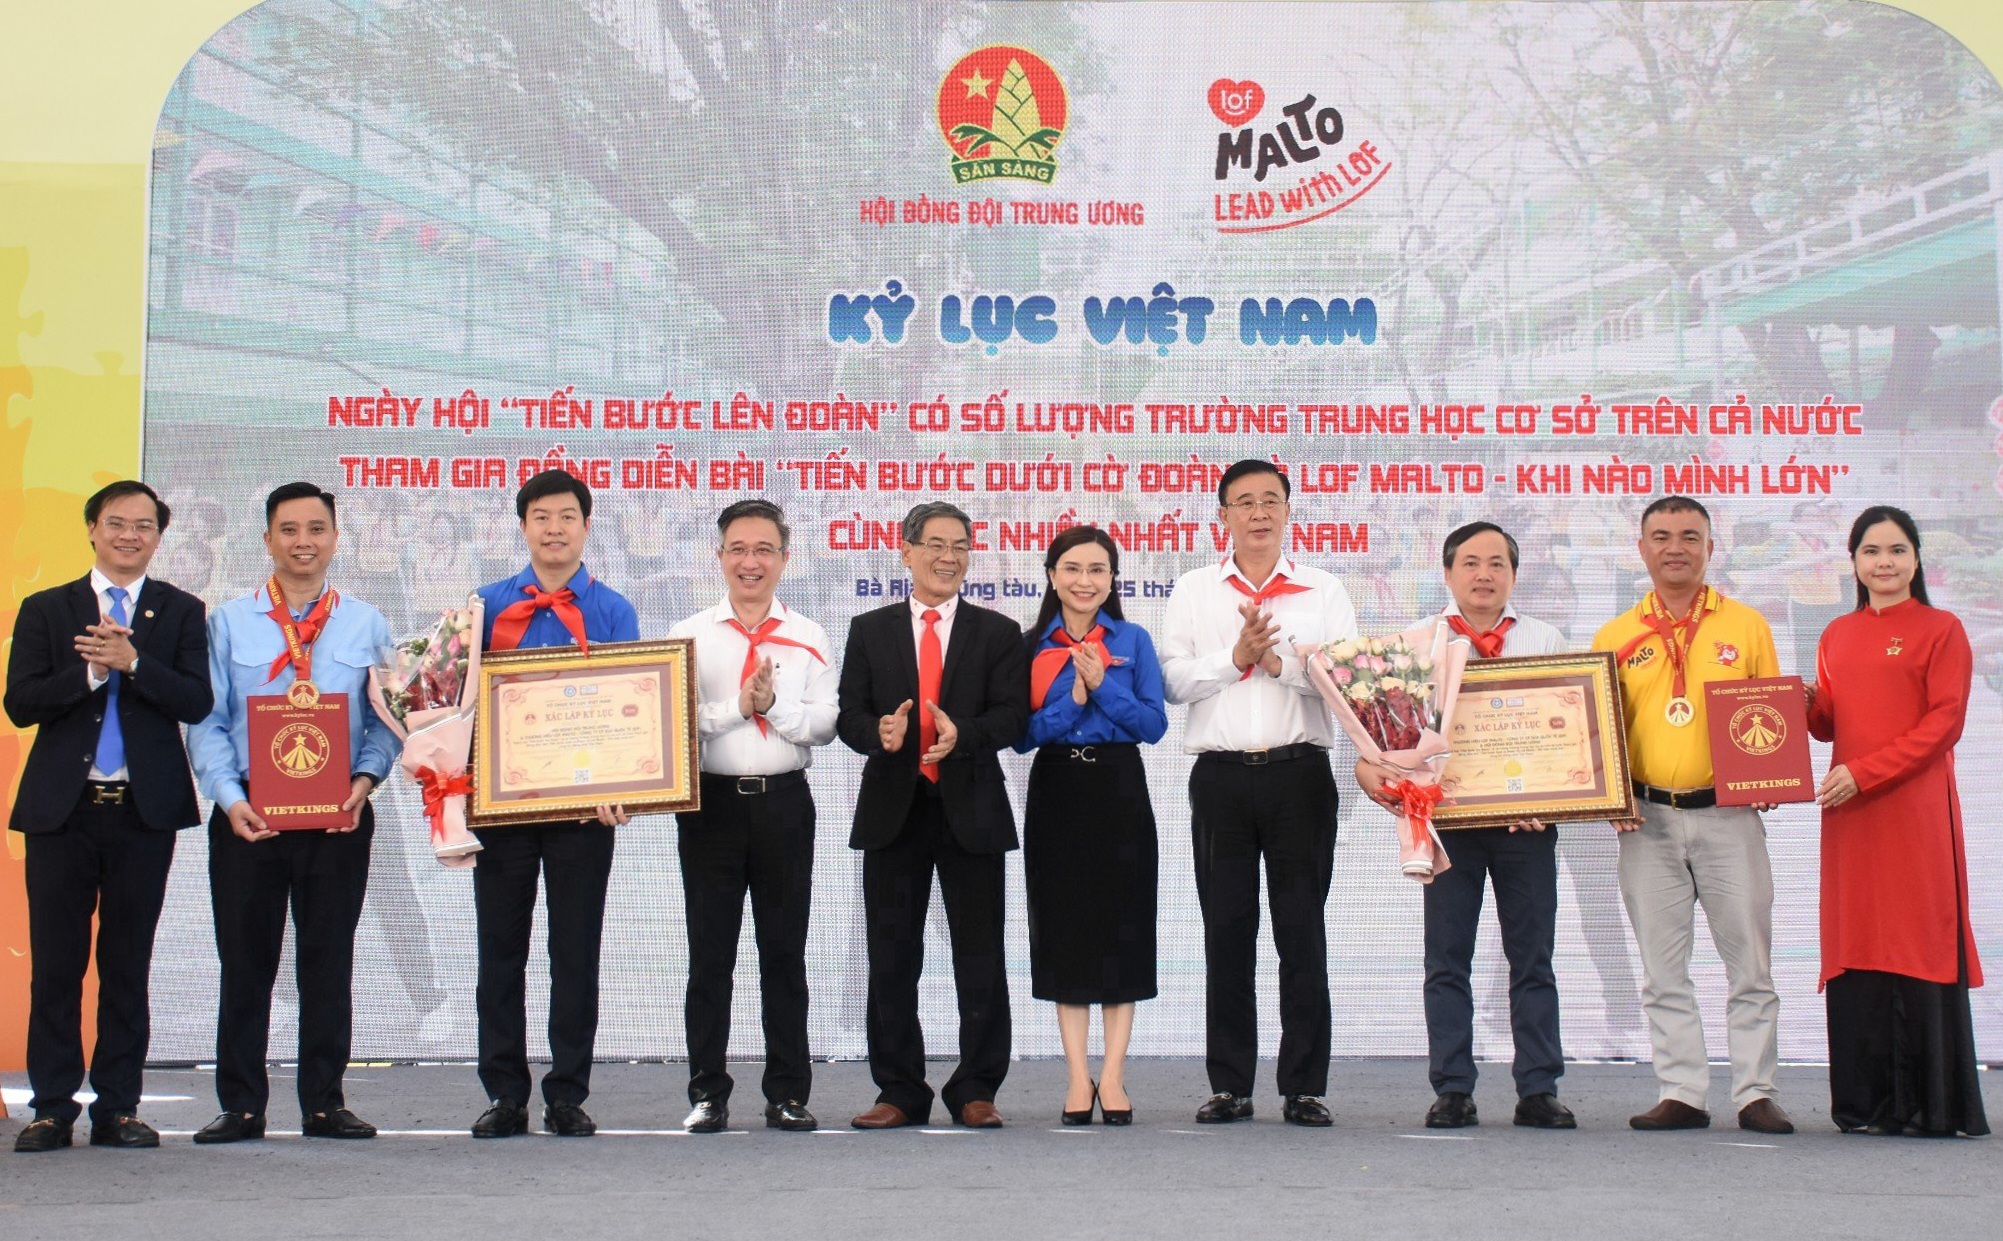 Tổ chức Kỷ lục Việt Nam (VietKings) trao quyết định công nhận kỷ lục tới Hội đồng Đội Trung ương và Công ty Cổ phần Sữa Quốc tế (IDP) - Thương hiệu Lof Malto tại ngày hội.